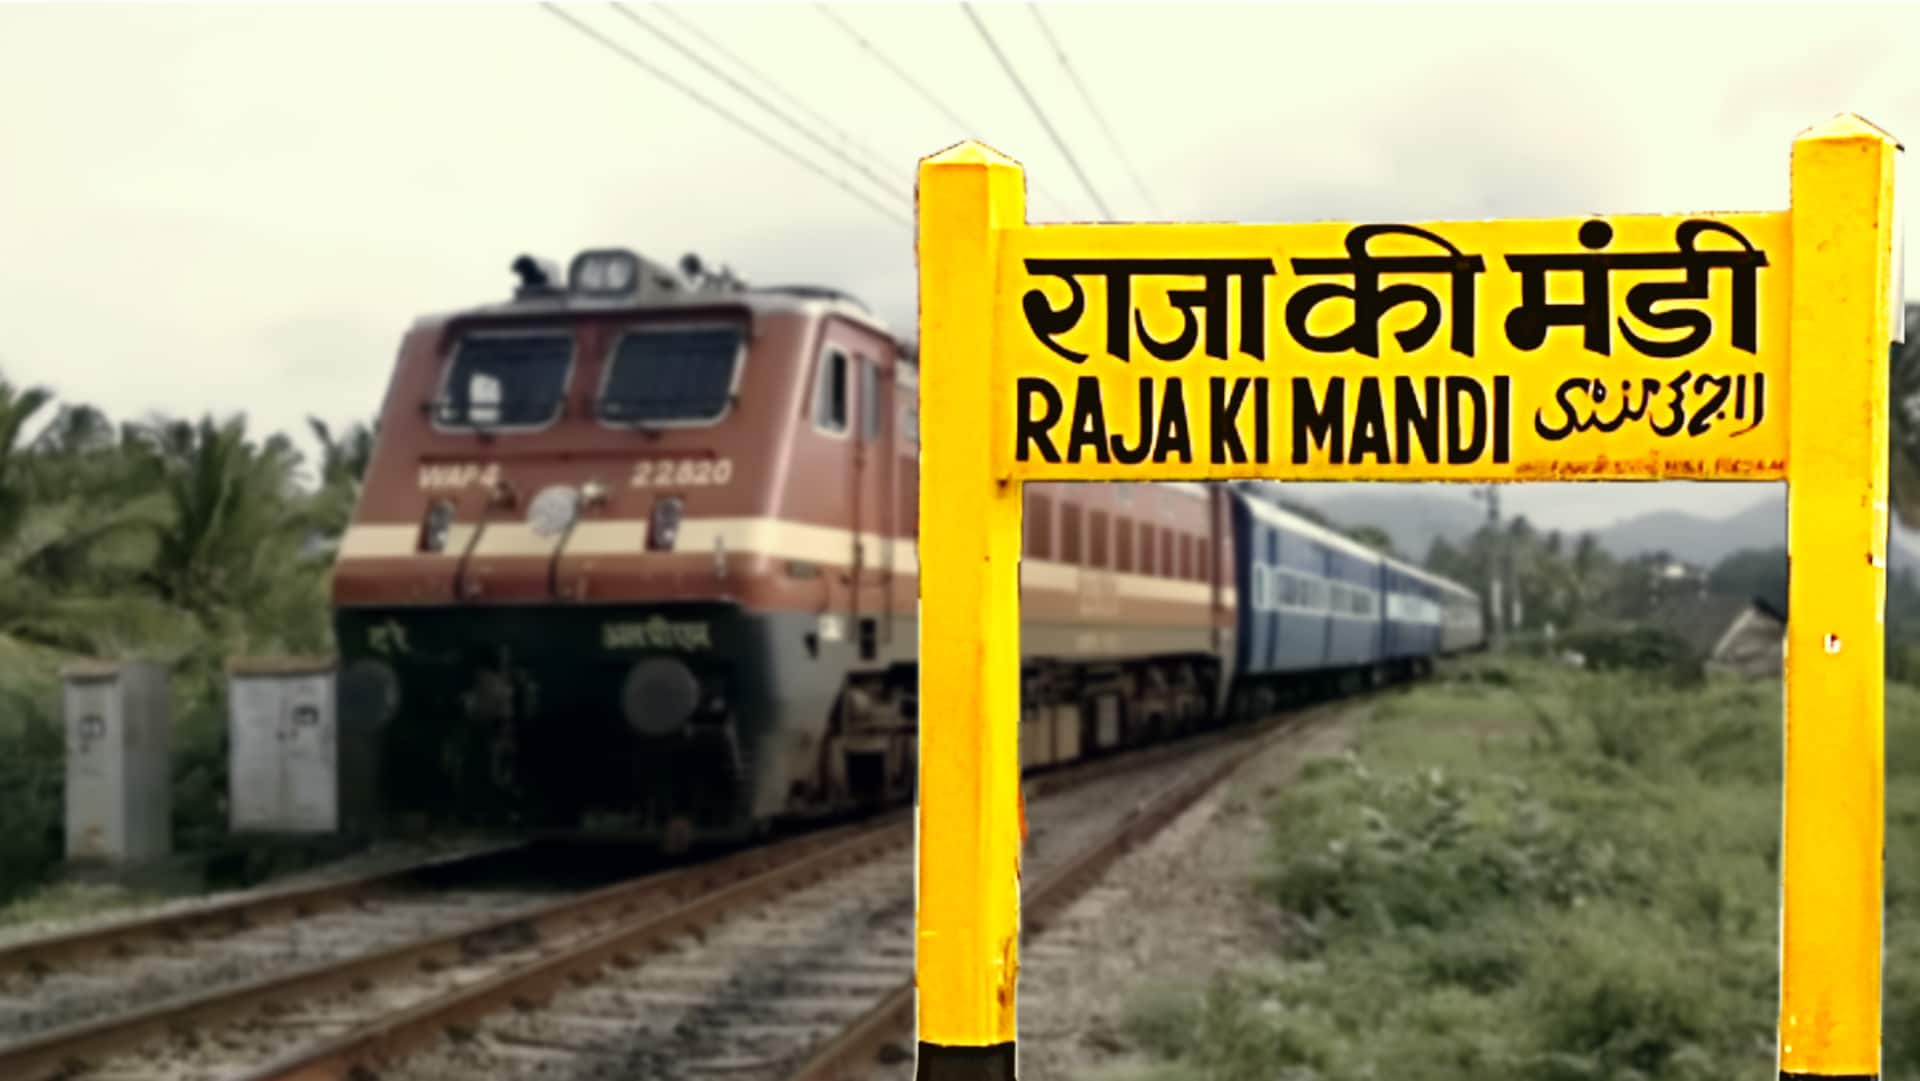 उत्तर प्रदेश: आगरा का 'राजा की मंडी रेलवे स्टेशन' बेहद असुरक्षित, 5 साल में 19 मौतें 